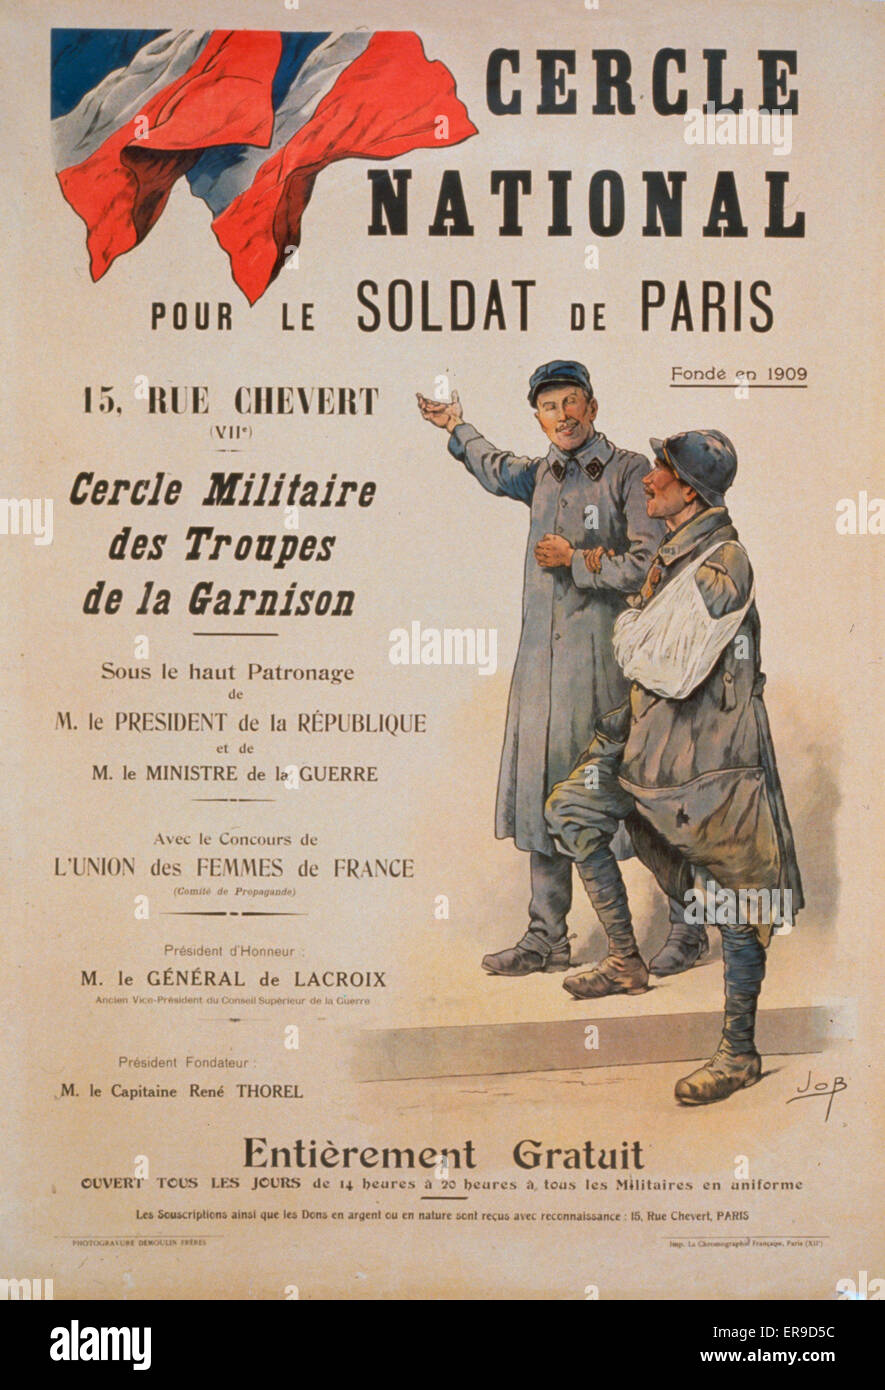 Cercle National pour le soldat de Paris Stock Photo